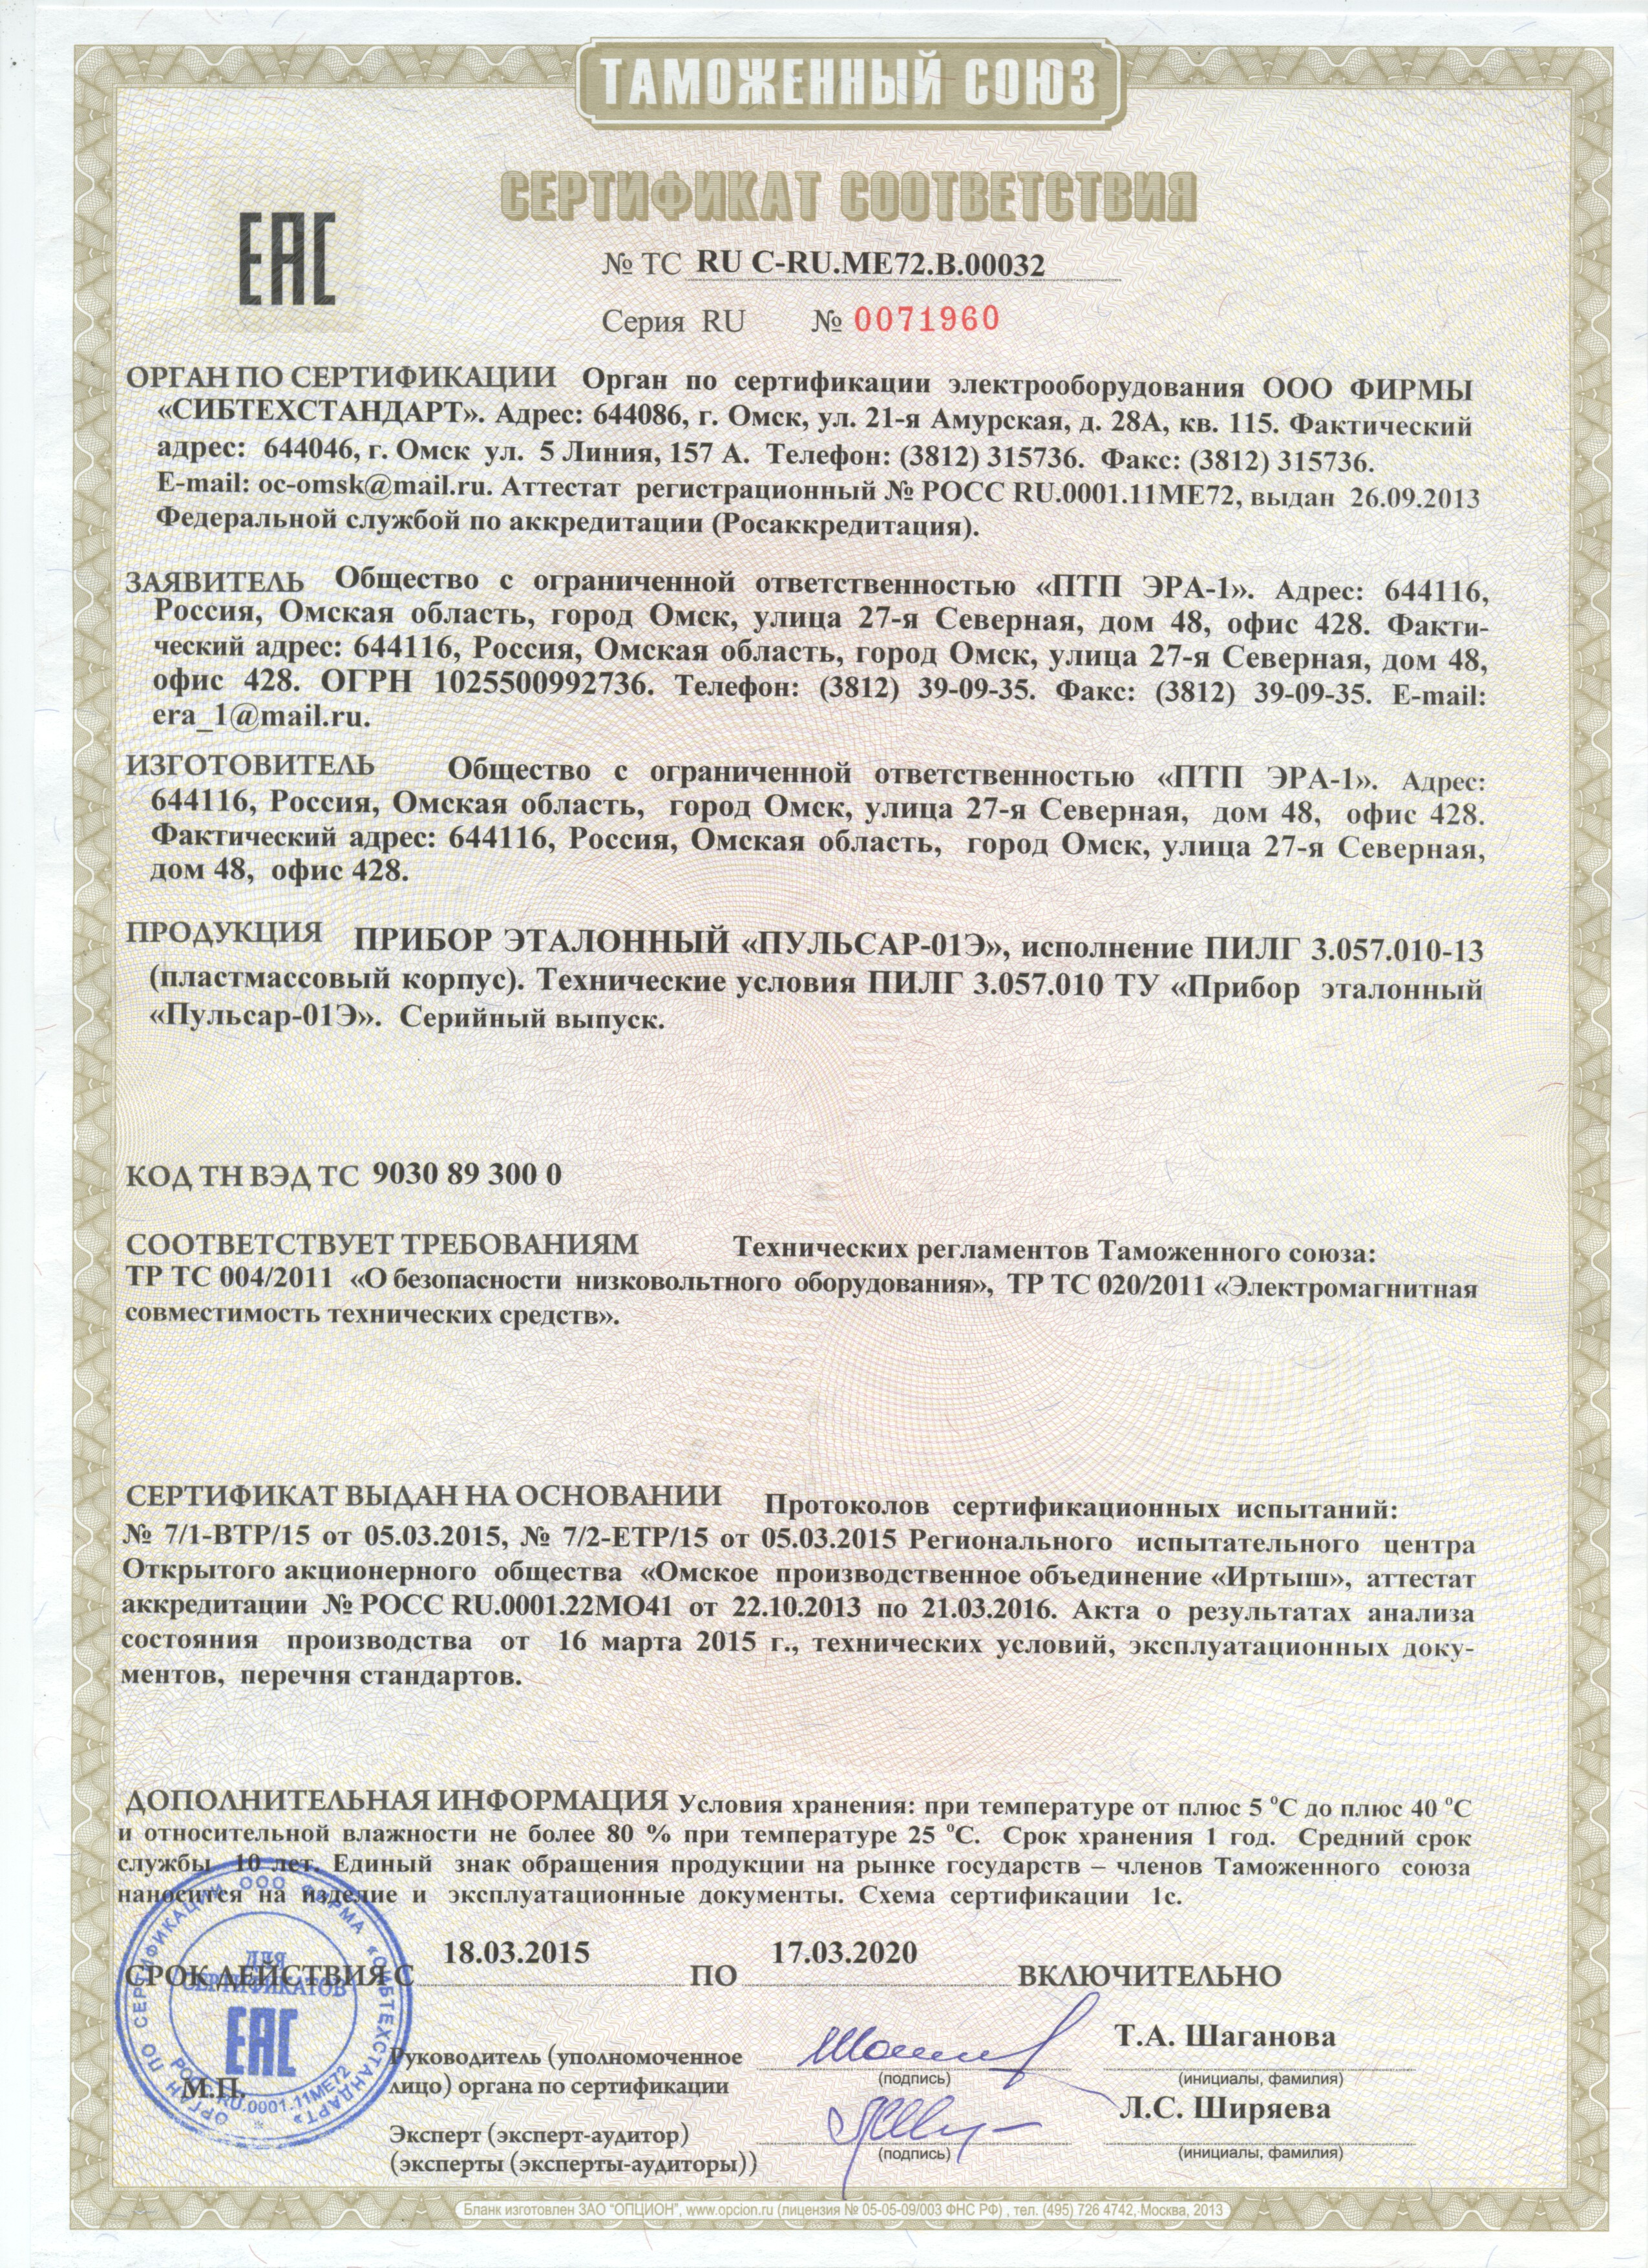 Декларация о соответствии прибора эталонного Пульсар-01Э требованиям ГОСТ Р и результатов испытаний